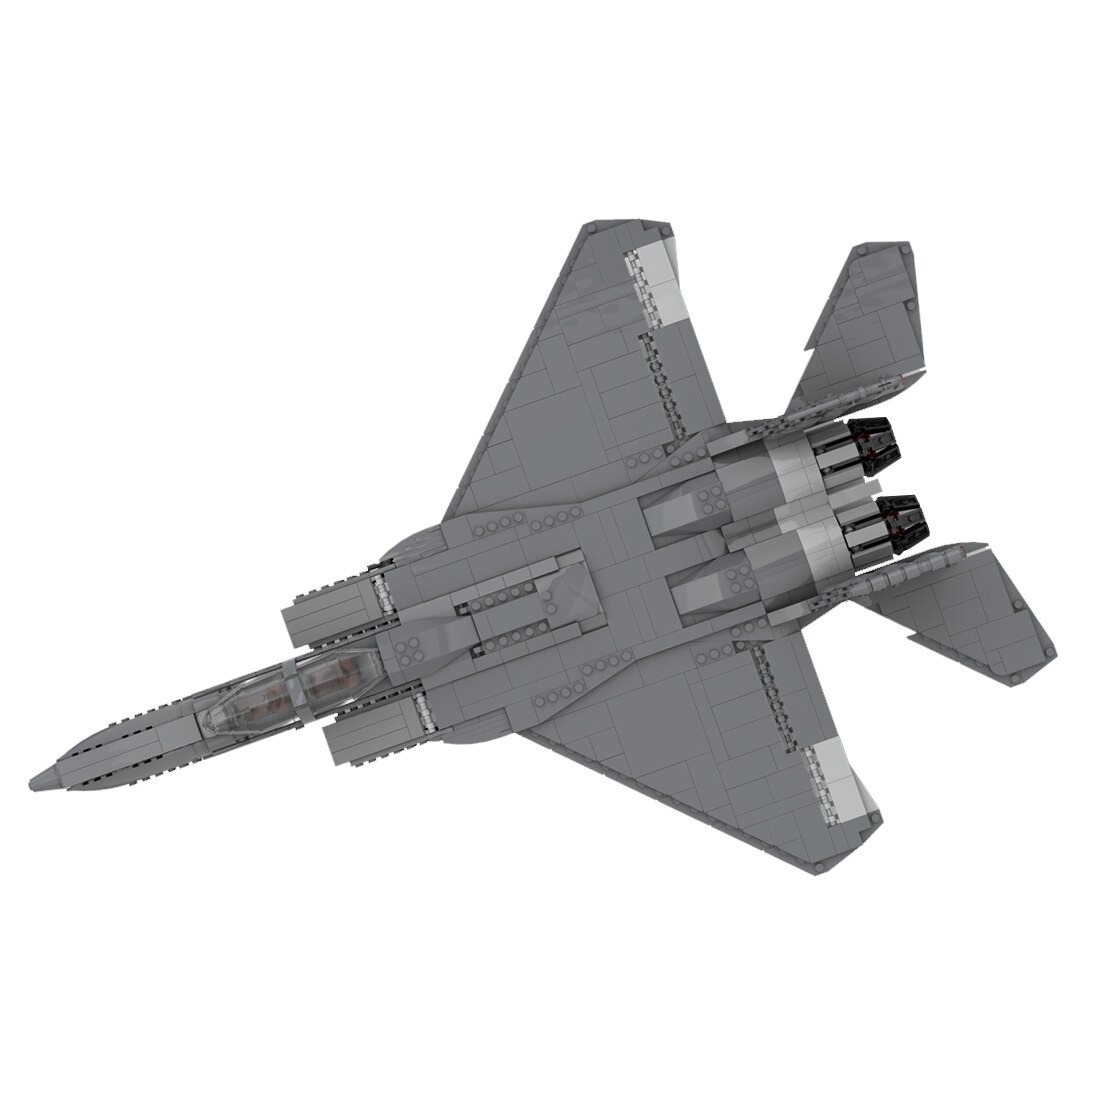 Authorized Moc 29950 F 15 E Strike Eagle Main 3.jpg